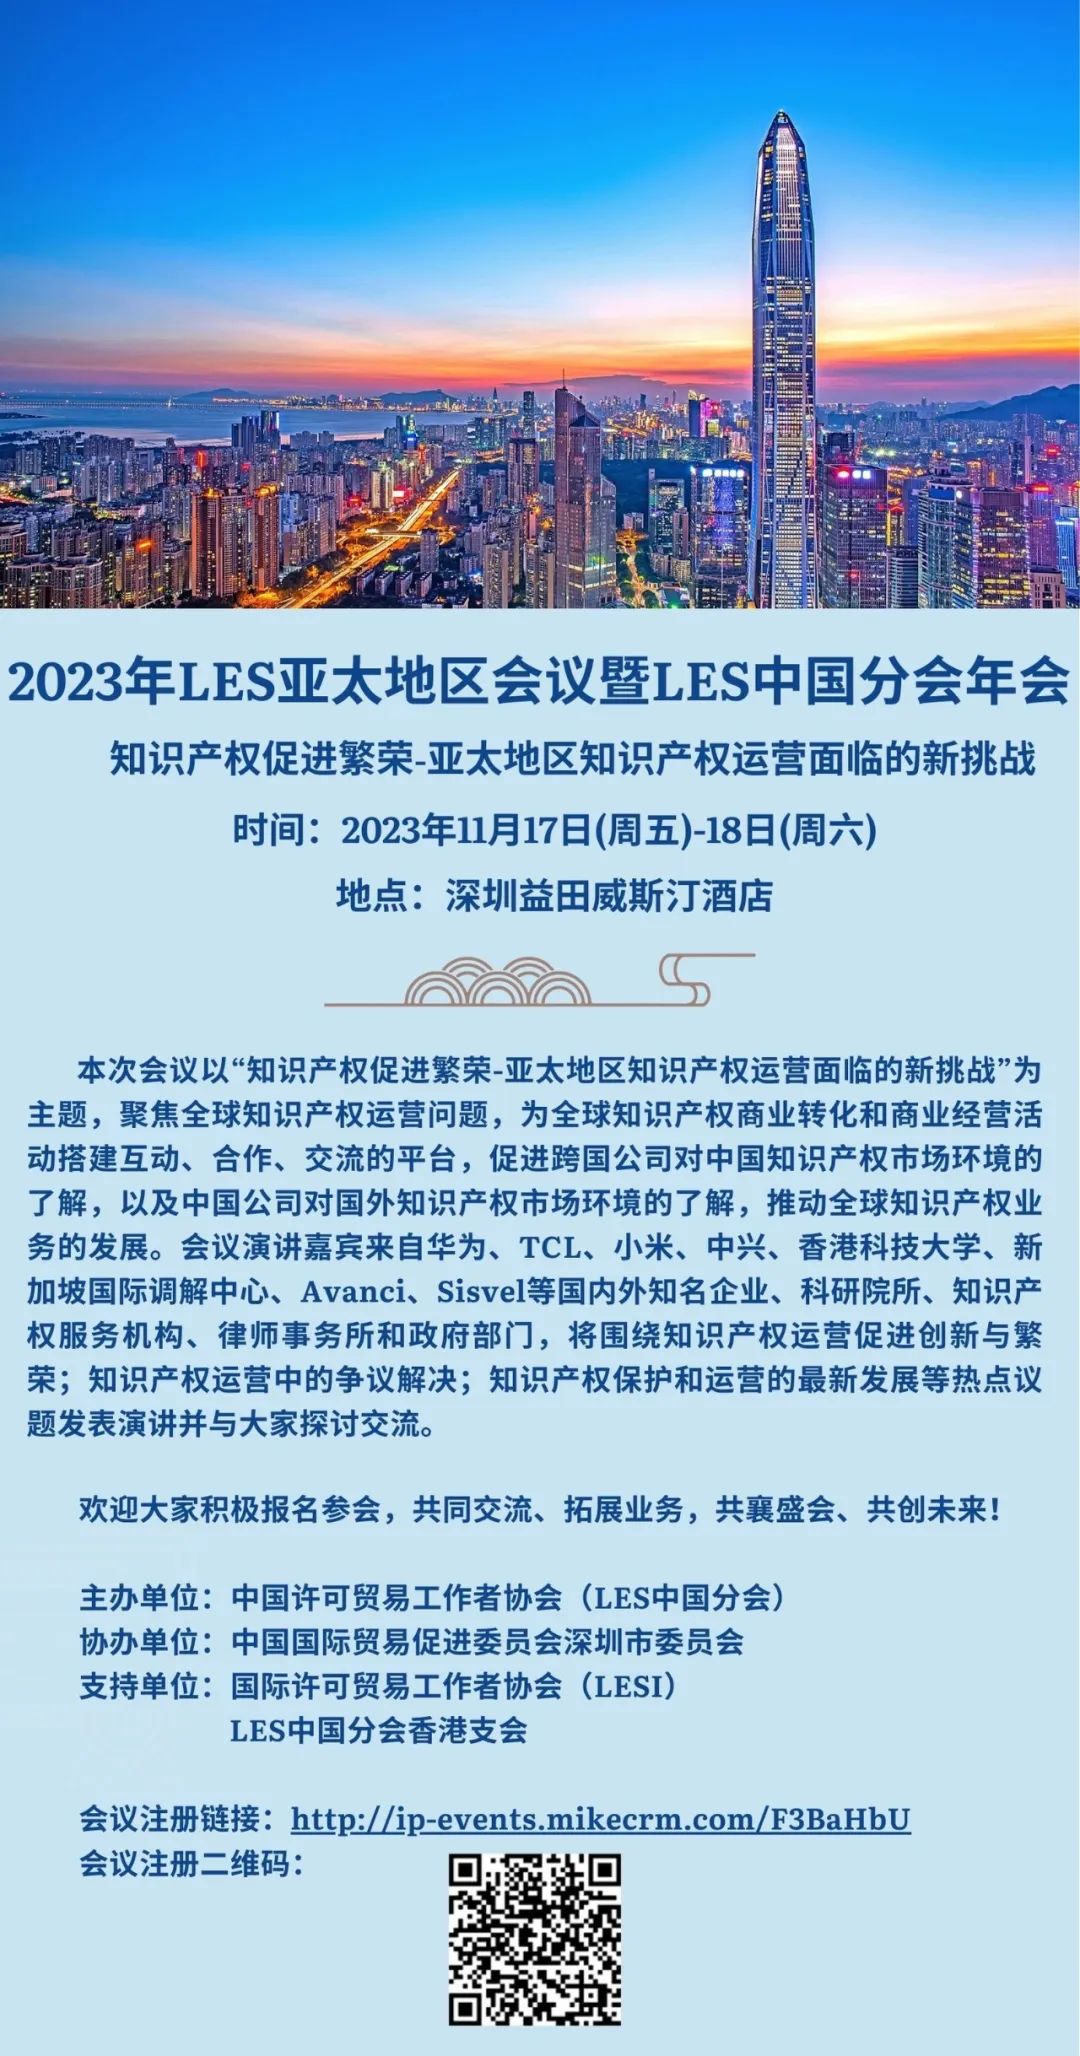 报名！诚邀参加2023年LES亚太地区会议暨LES中国分会年会